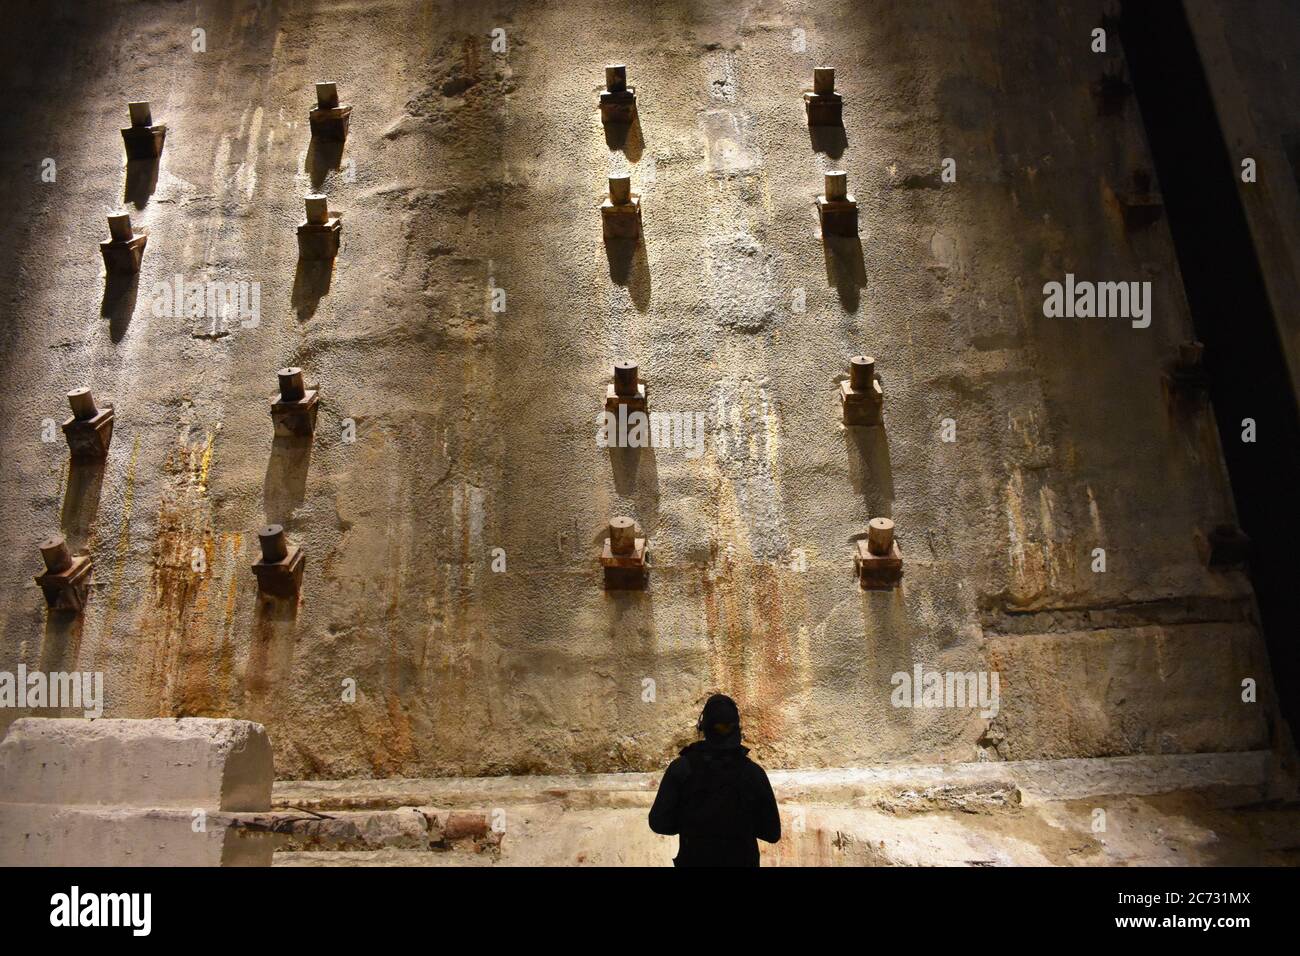 Un visiteur regarde le mur de lisier dans le Foundation Hall du 9/11 Memorial Museum, New York. Le mur présente des taches de rouille et des supports métalliques. Banque D'Images